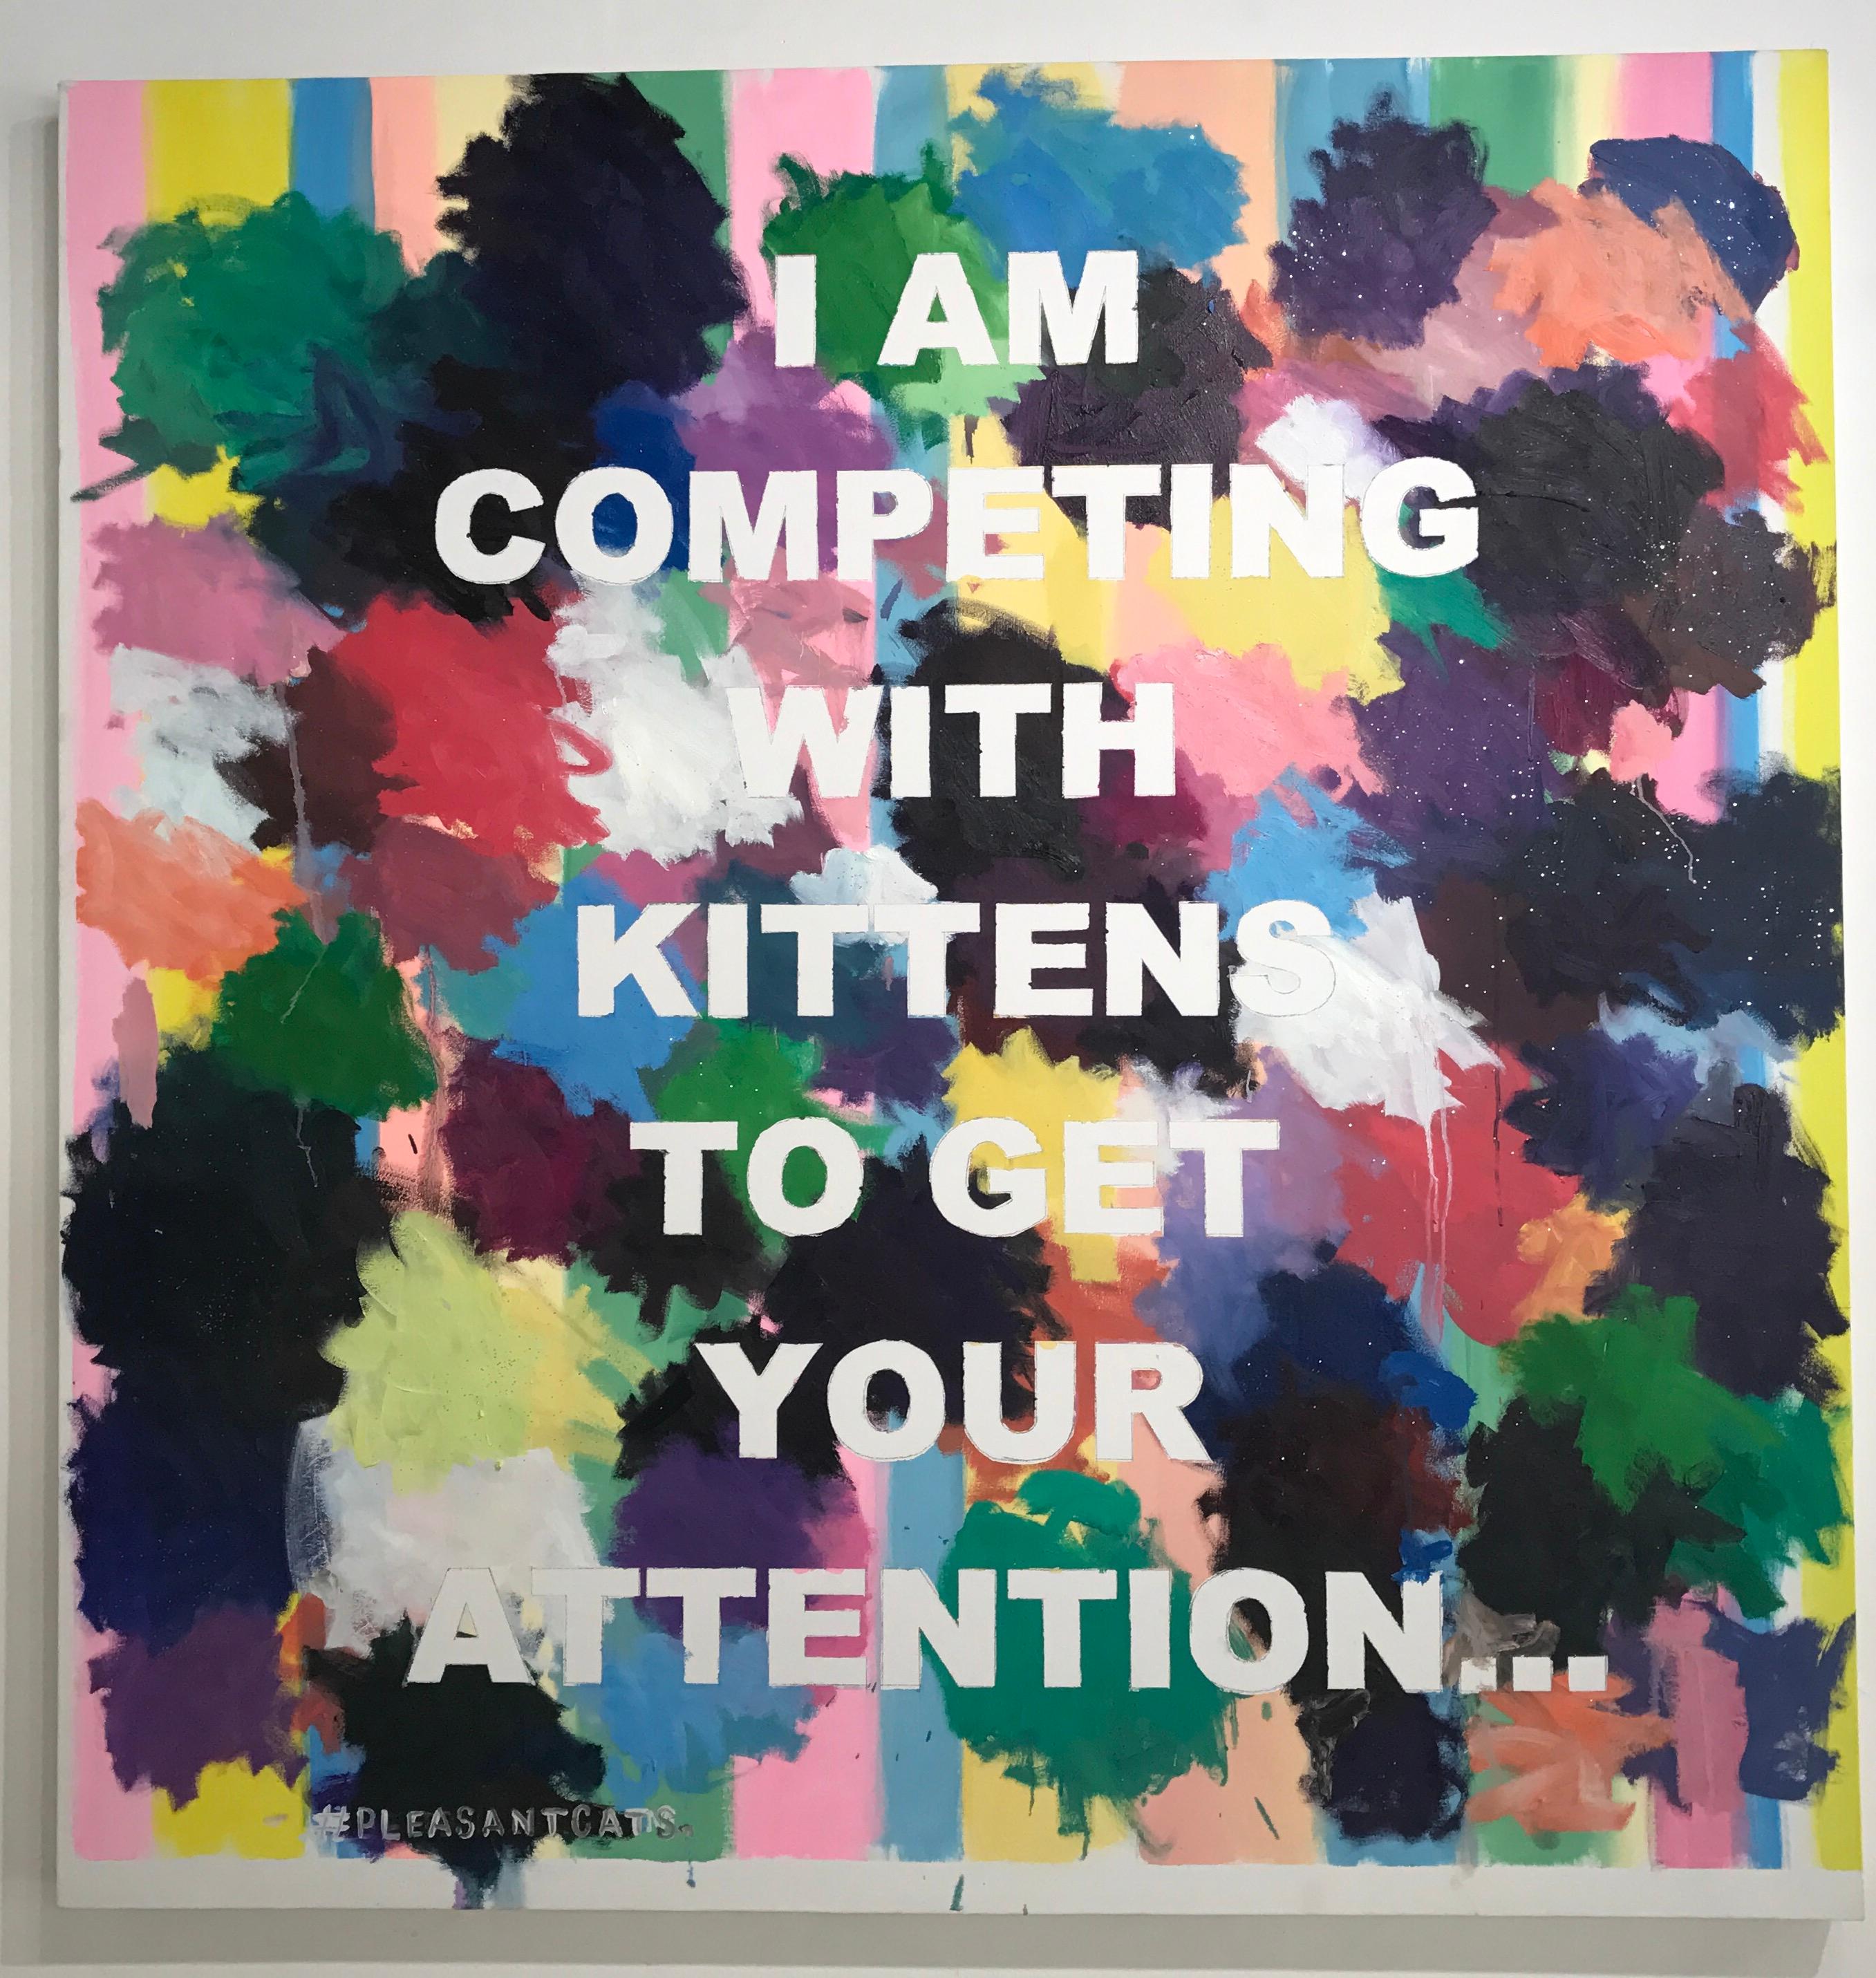 Peinture abstraite à grande échelle basée sur un texte conceptuel « #Pleasantcats »